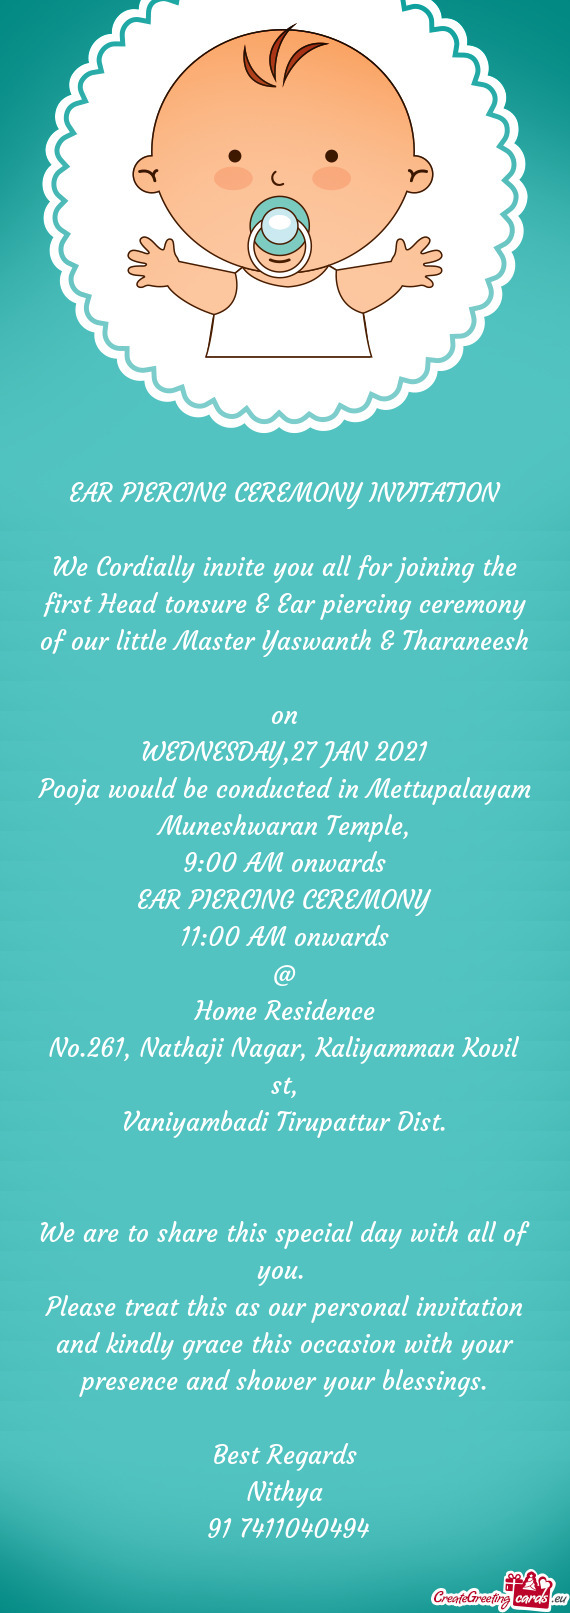 Master Yaswanth & Tharaneesh